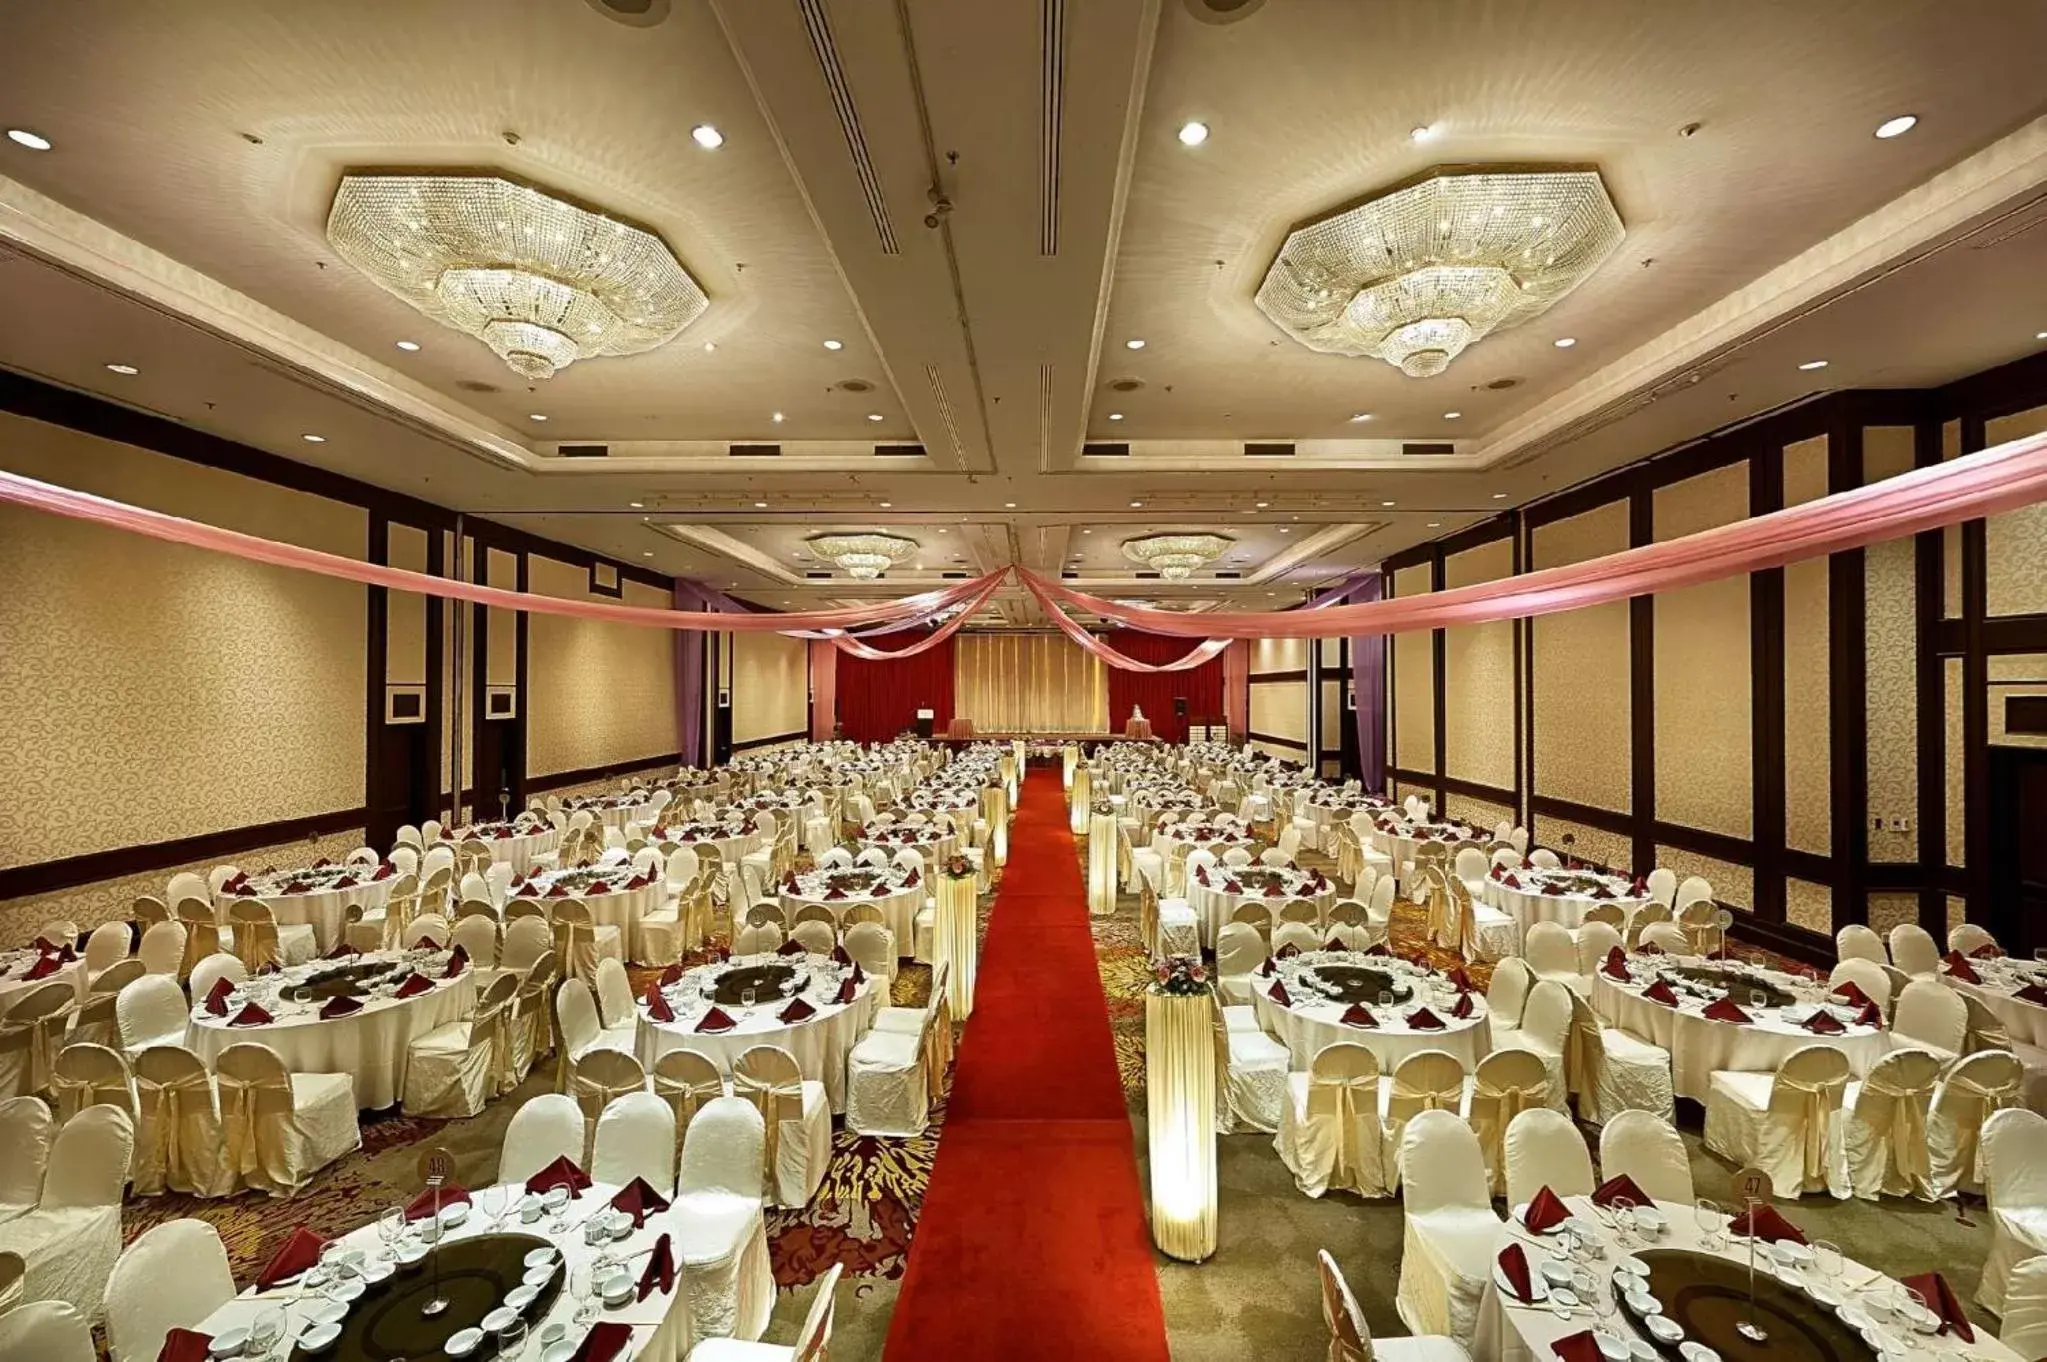 Banquet/Function facilities, Banquet Facilities in Berjaya Penang Hotel